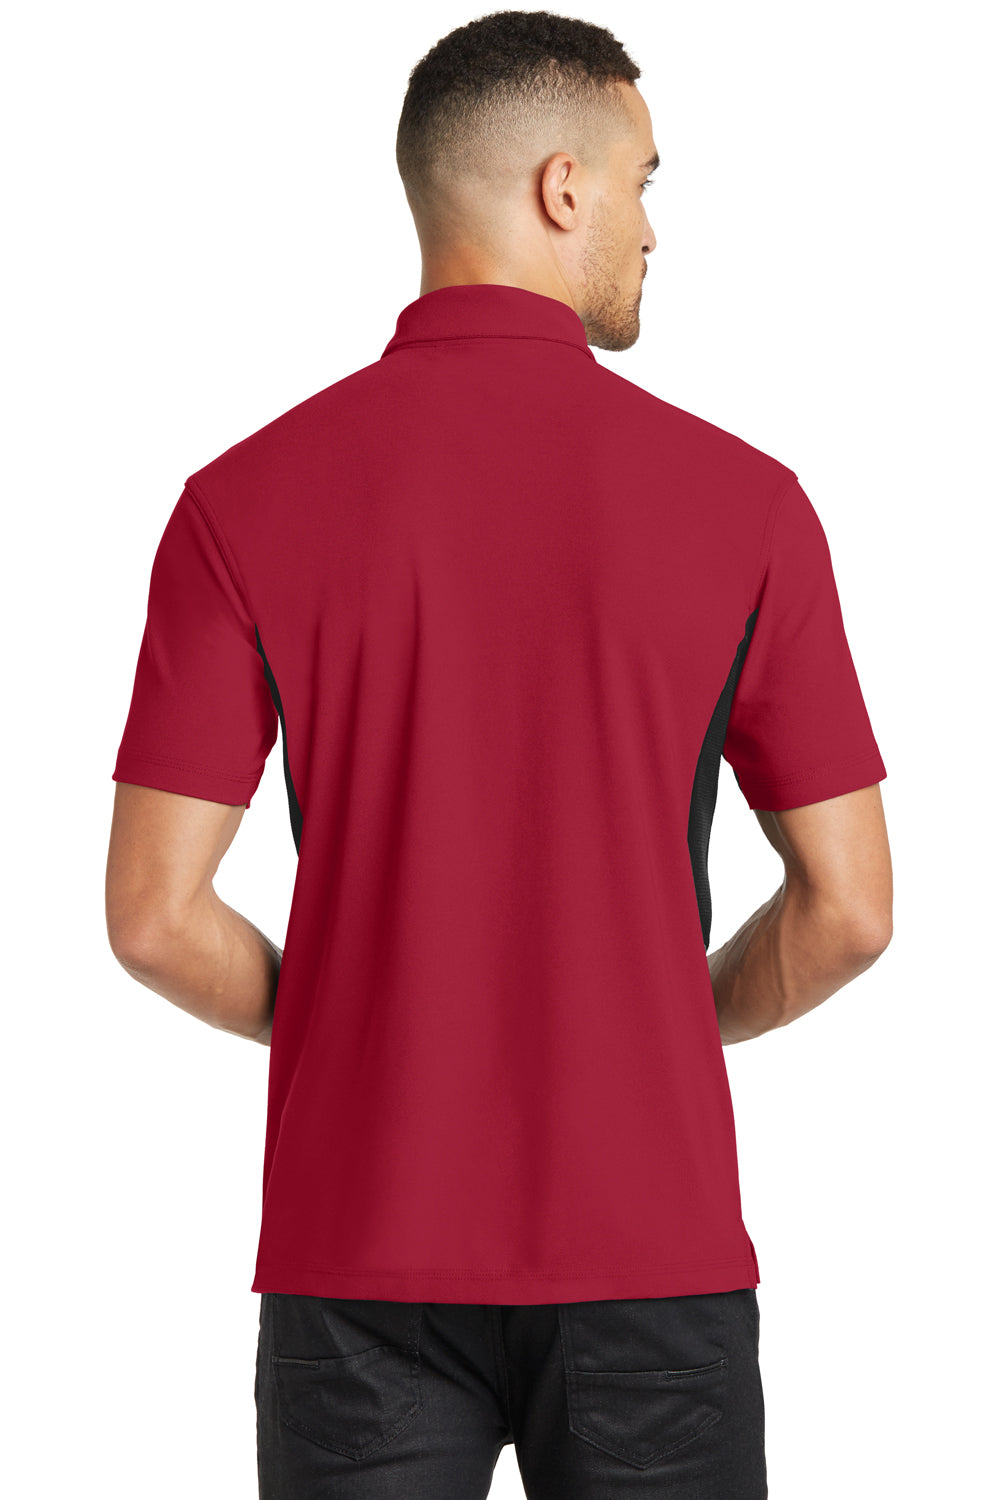 Ogio OG102 Mens Accelerator Moisture Wicking Short Sleeve Polo Shirt w/ Pocket Red Back